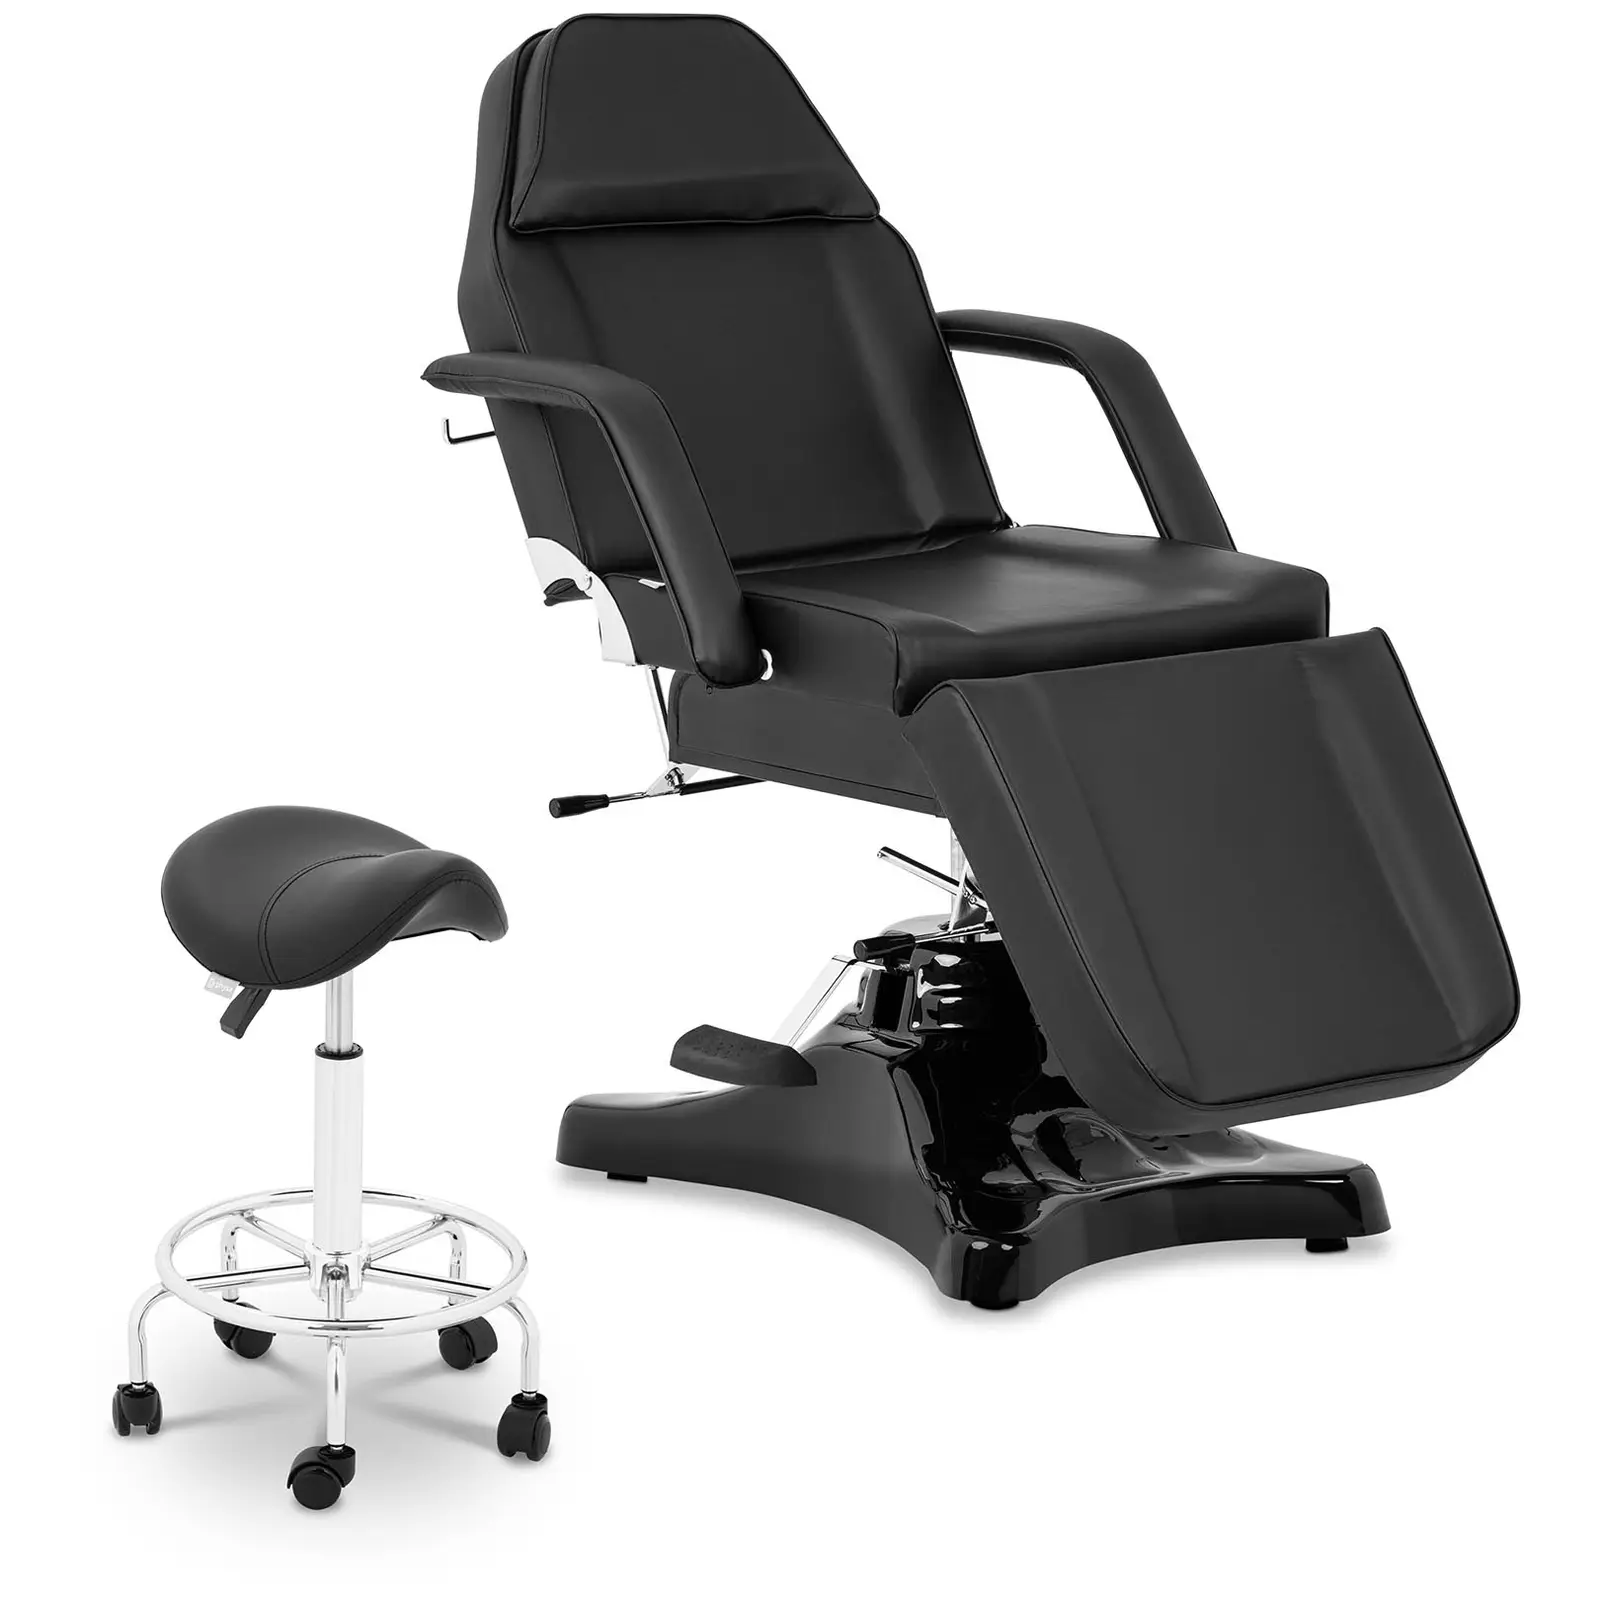 Behandlingsbänk Bergamo - svart + sadelstol med ryggstöd Frankfurt - svart - Set